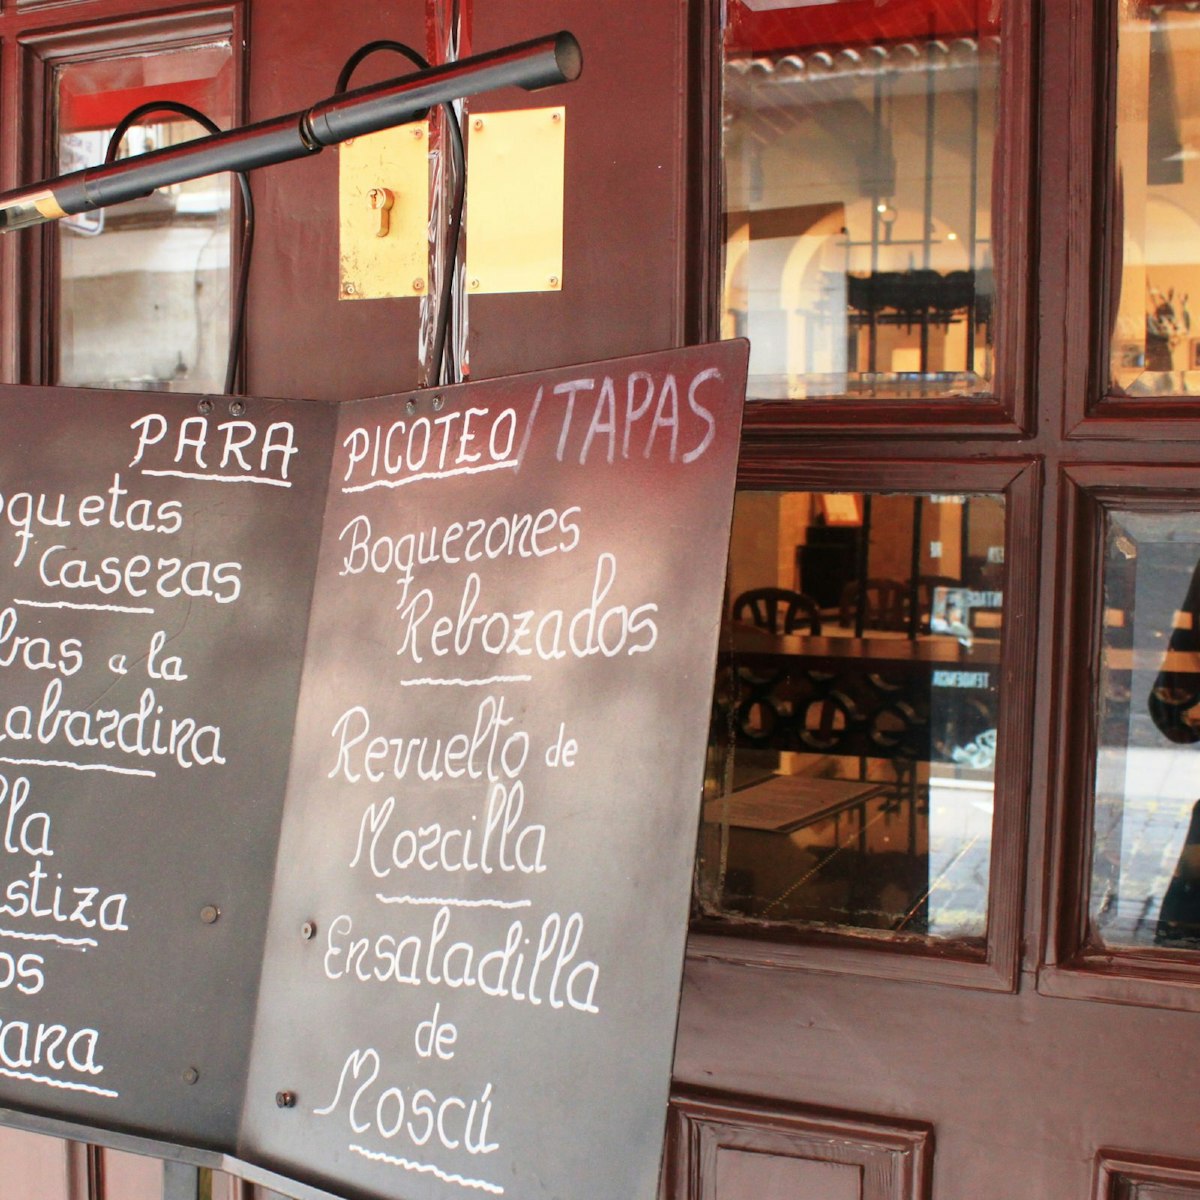 A close-up of the tapas menu at Casa Perico.